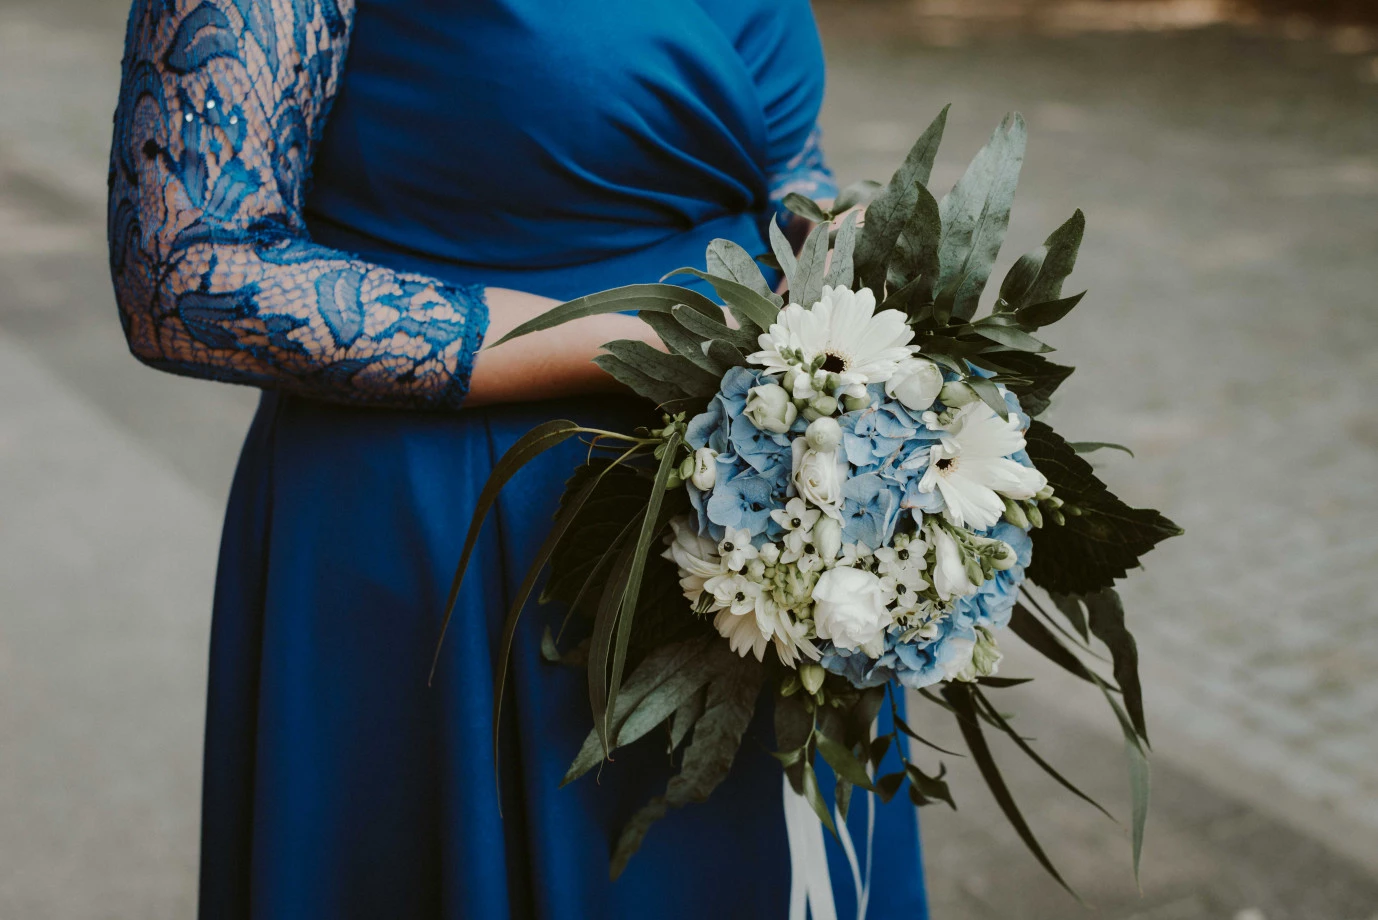 zdjęcia ostrow-wielkopolski fotograf dimplephotos portfolio zdjecia slubne inspiracje wesele plener slubny sesja slubna